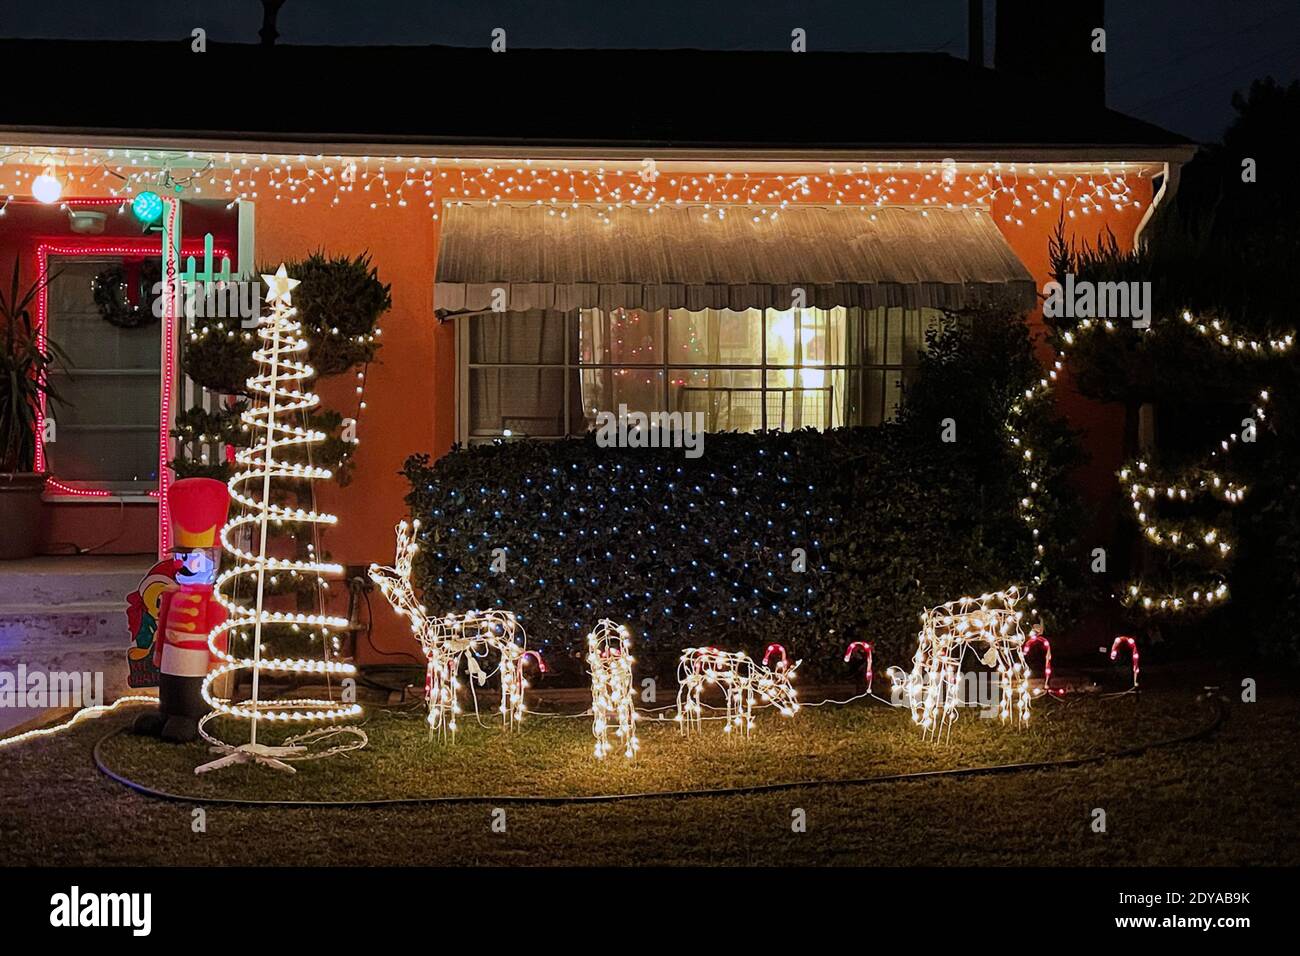 Une exposition de Noël dans une résidence, le jeudi 24 décembre 2020, à Montebello, en Californie. Banque D'Images